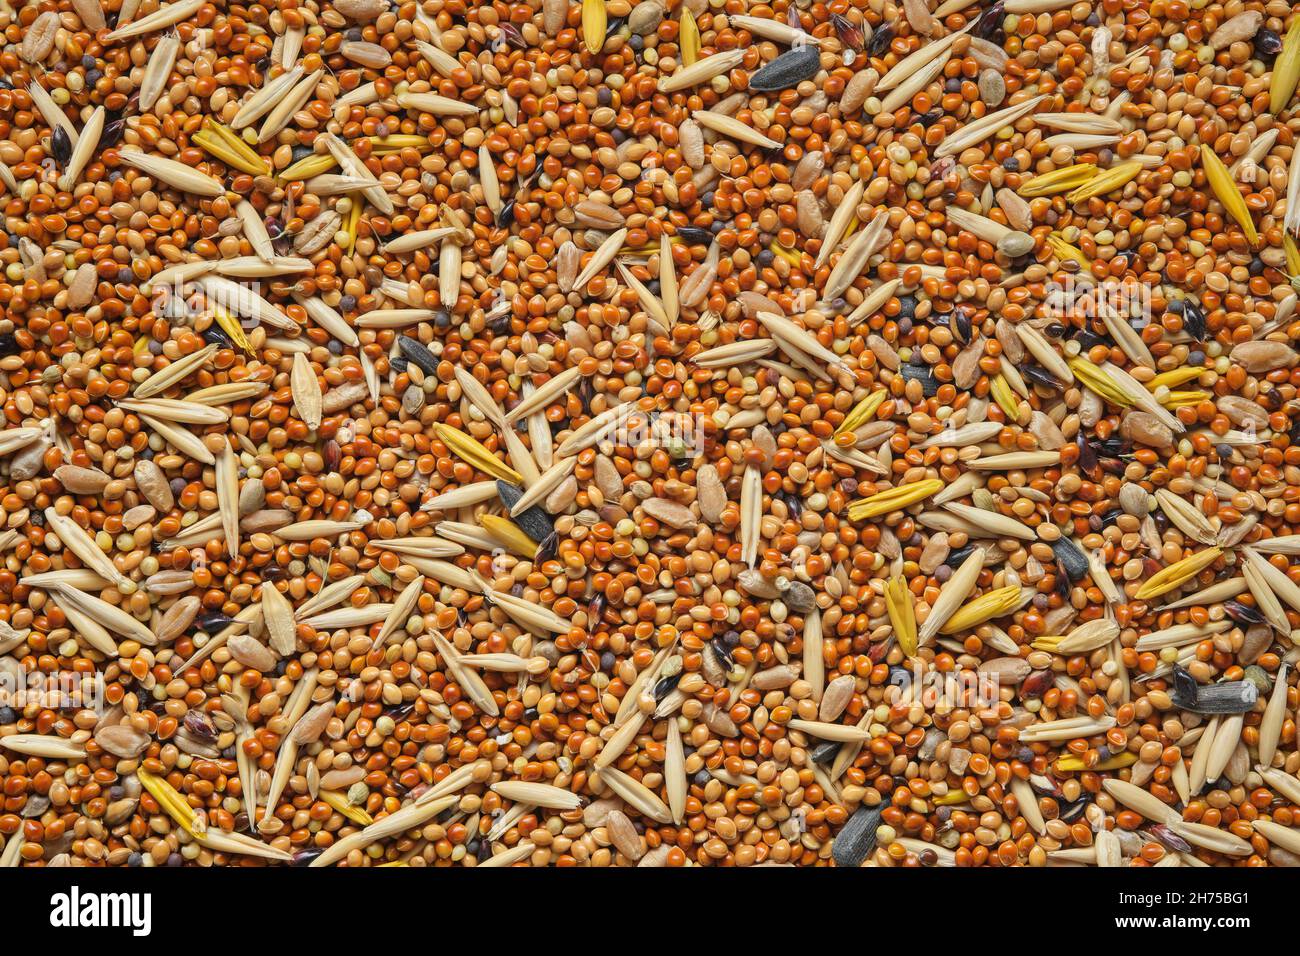 Semillas de aves, piensos para aves - mijo con la adición de granos de avena, semillas de girasol, semillas de cereales silvestres. Vista superior, diseño plano. Foto de stock